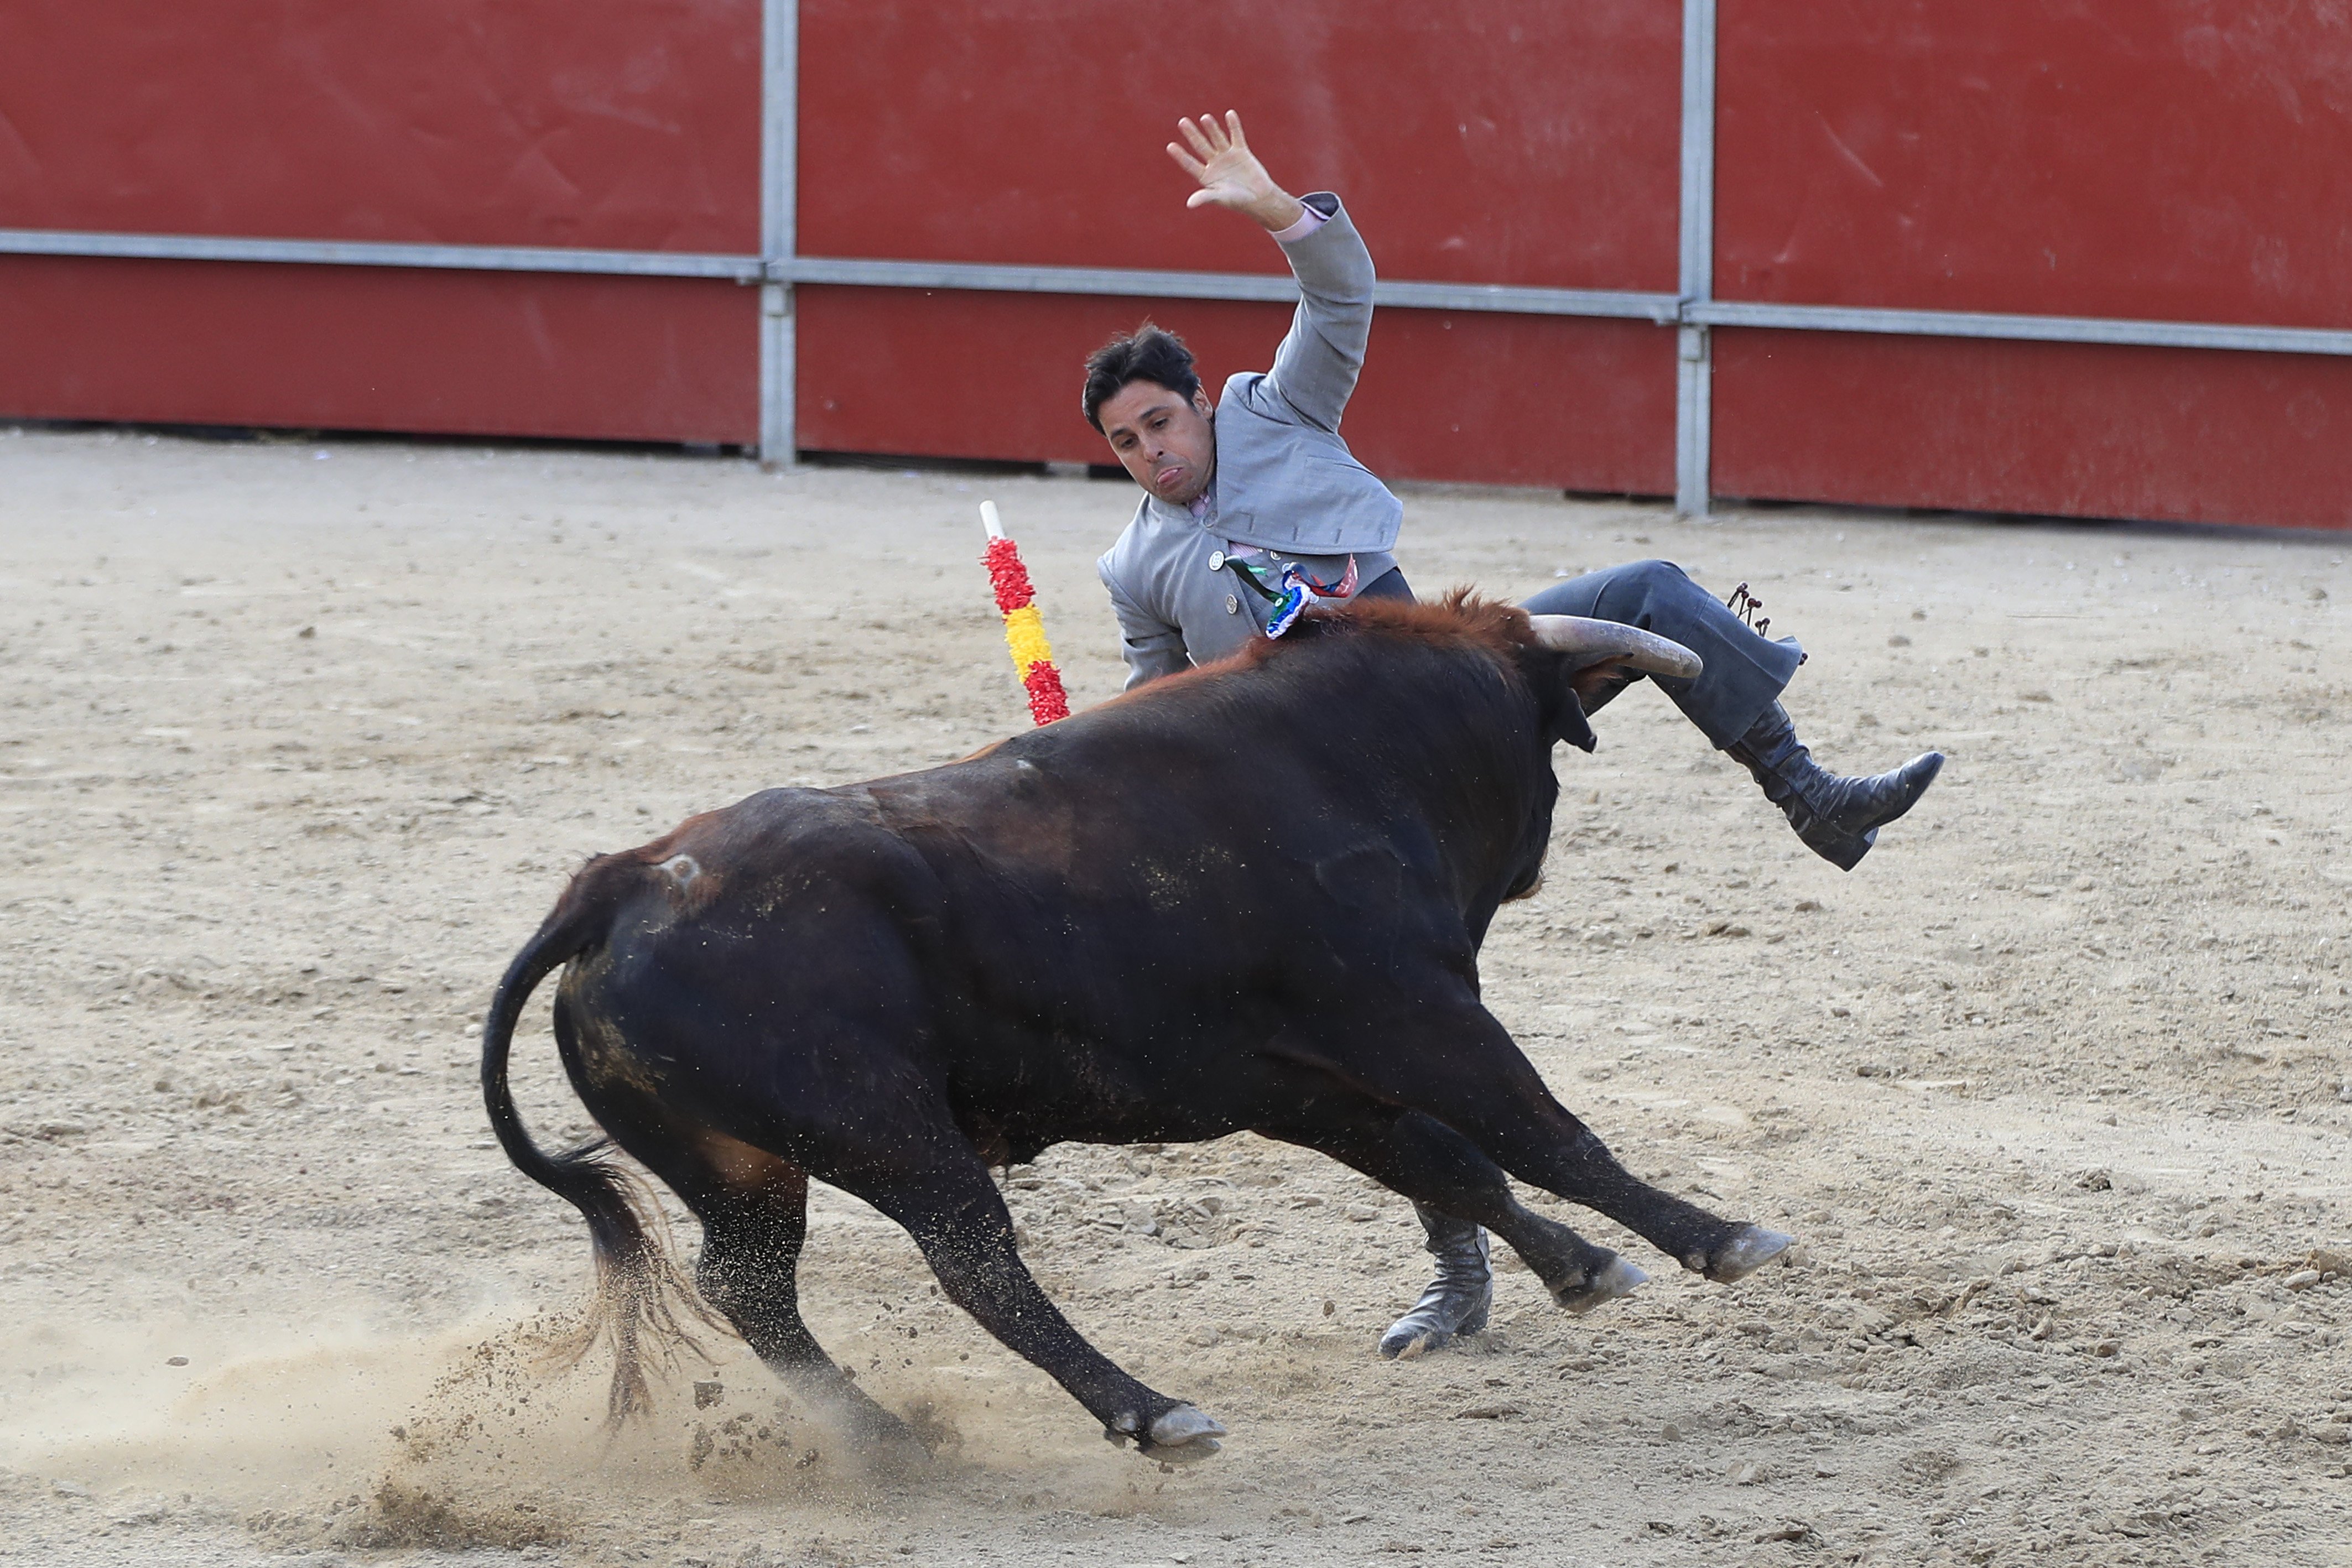 FOTOS Fran Rivera posa el fill de 18 mesos en risc: a cavall sense protecció